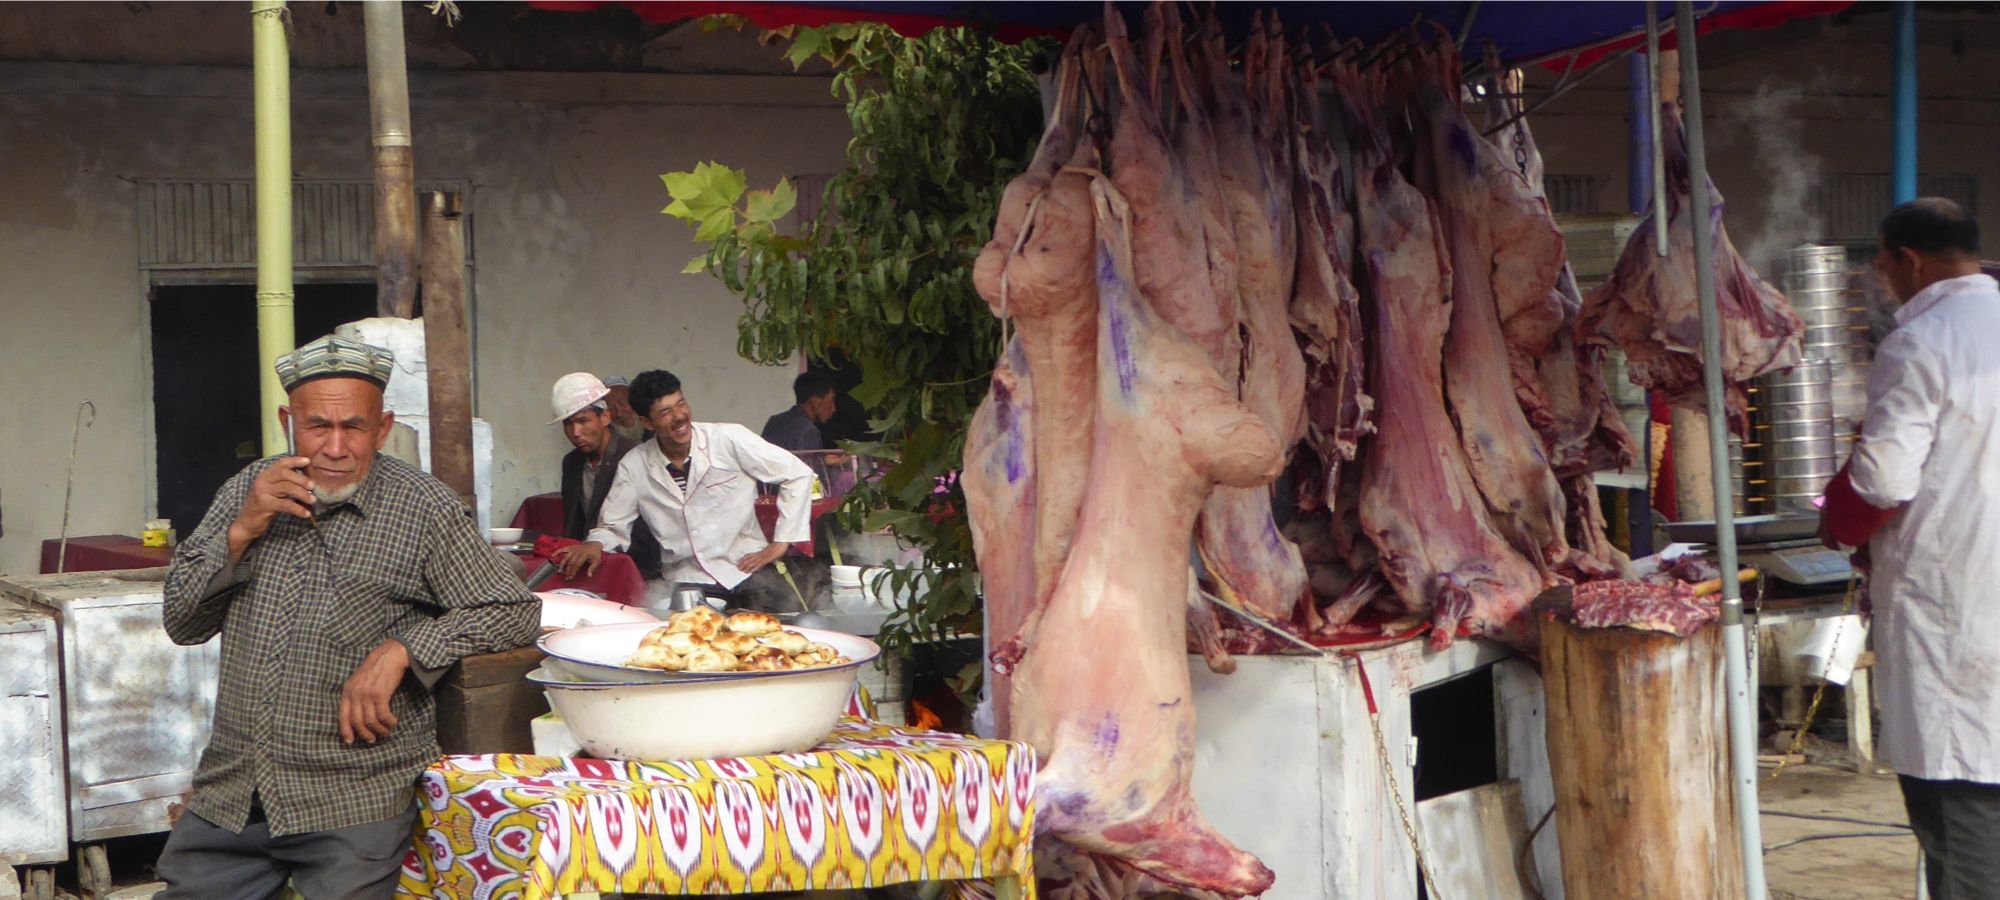 Kashgar - Livestock Market 